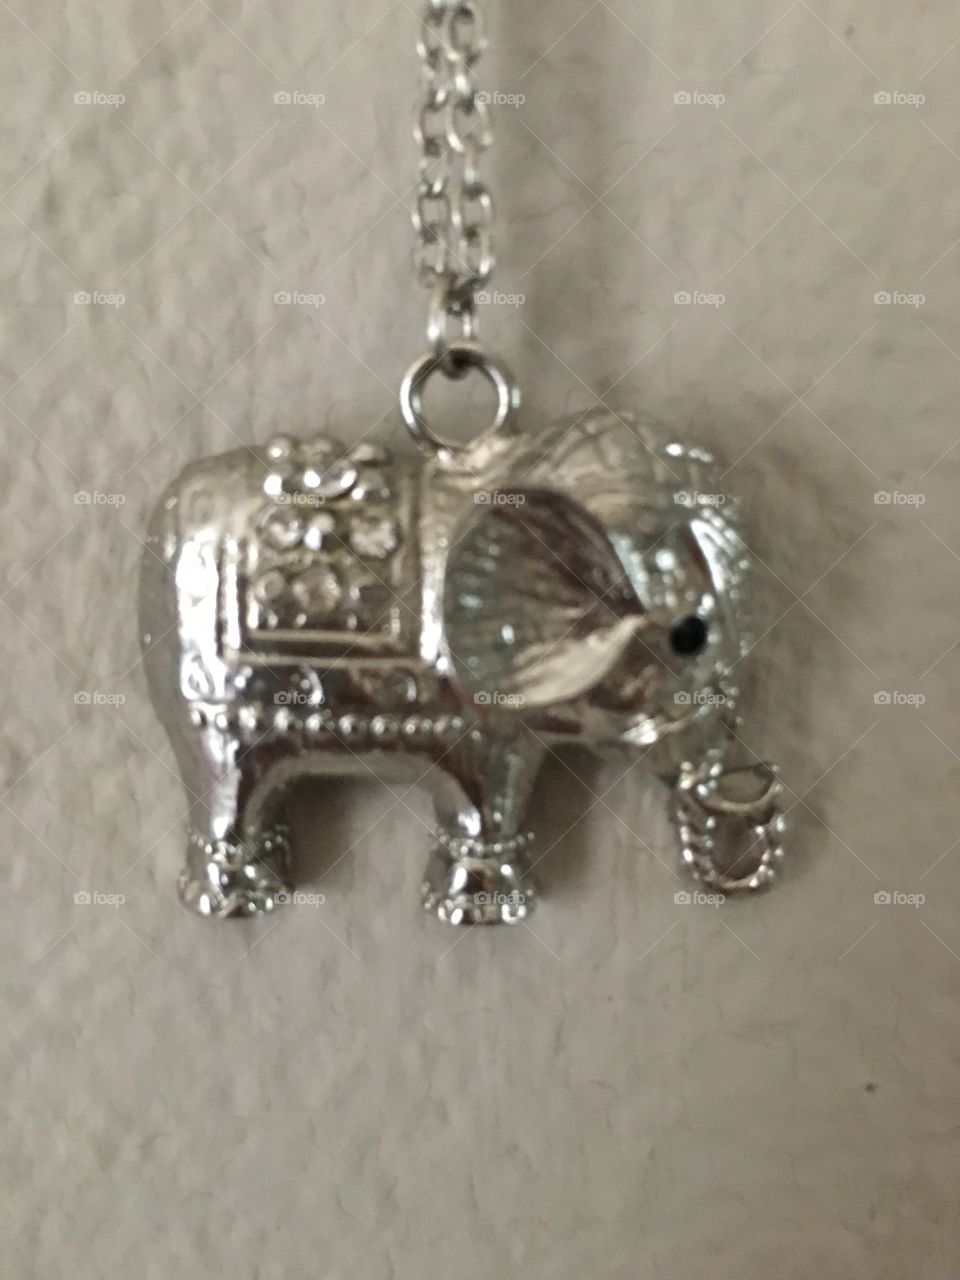 Hun elefante en una cadena

